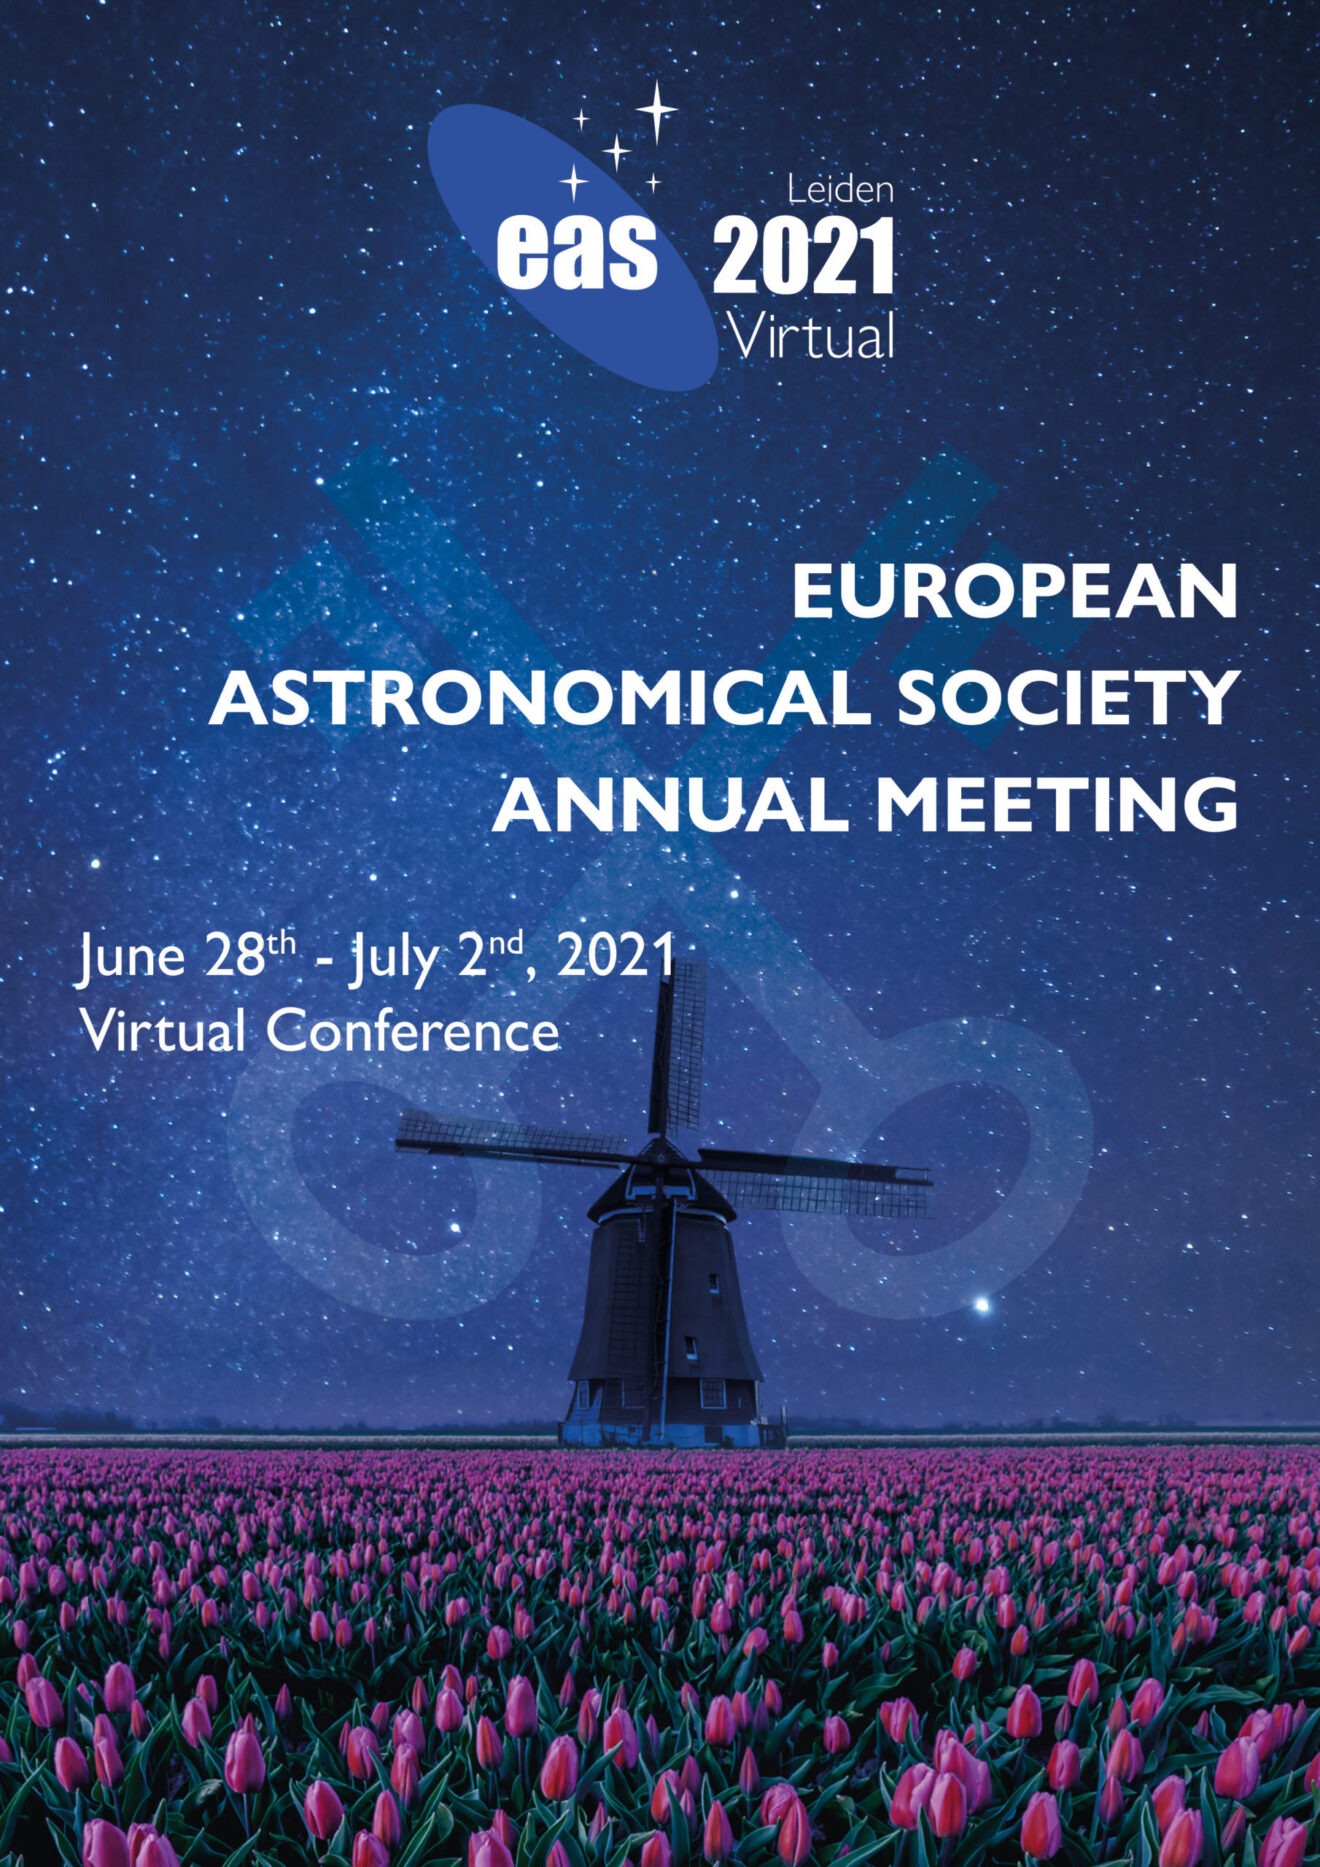 Op 28 juni start de grootste jaarlijkse bijeenkomst ooit van de European Astronomical Society (EAS)